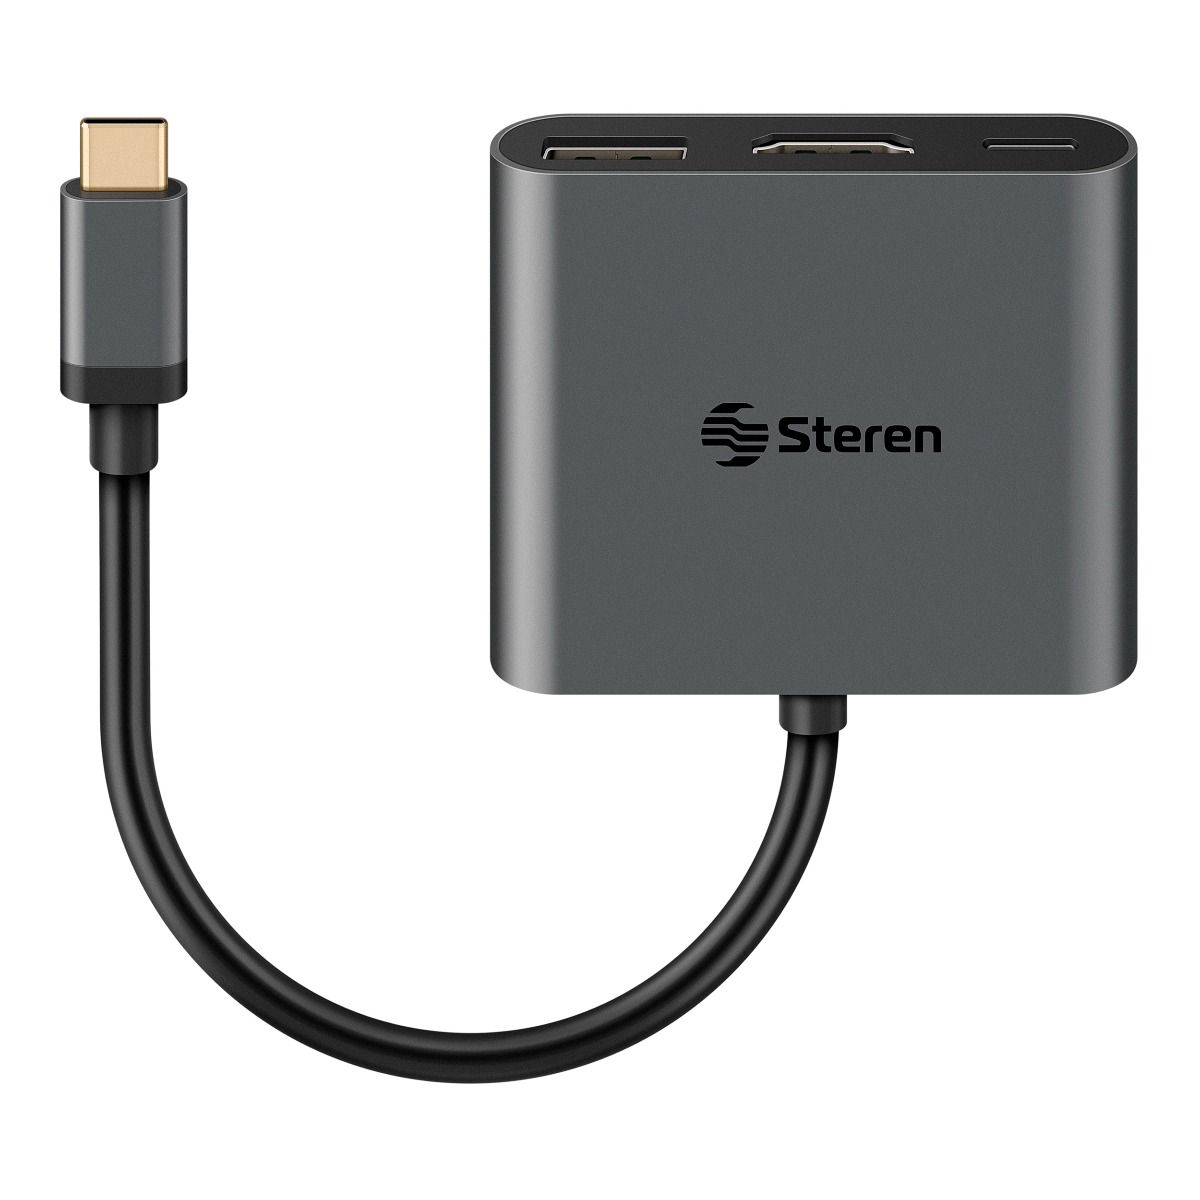 Mínimo itálico hierro Adaptador USB C a HDMI / USB 3.0 / USB C Steren Tienda